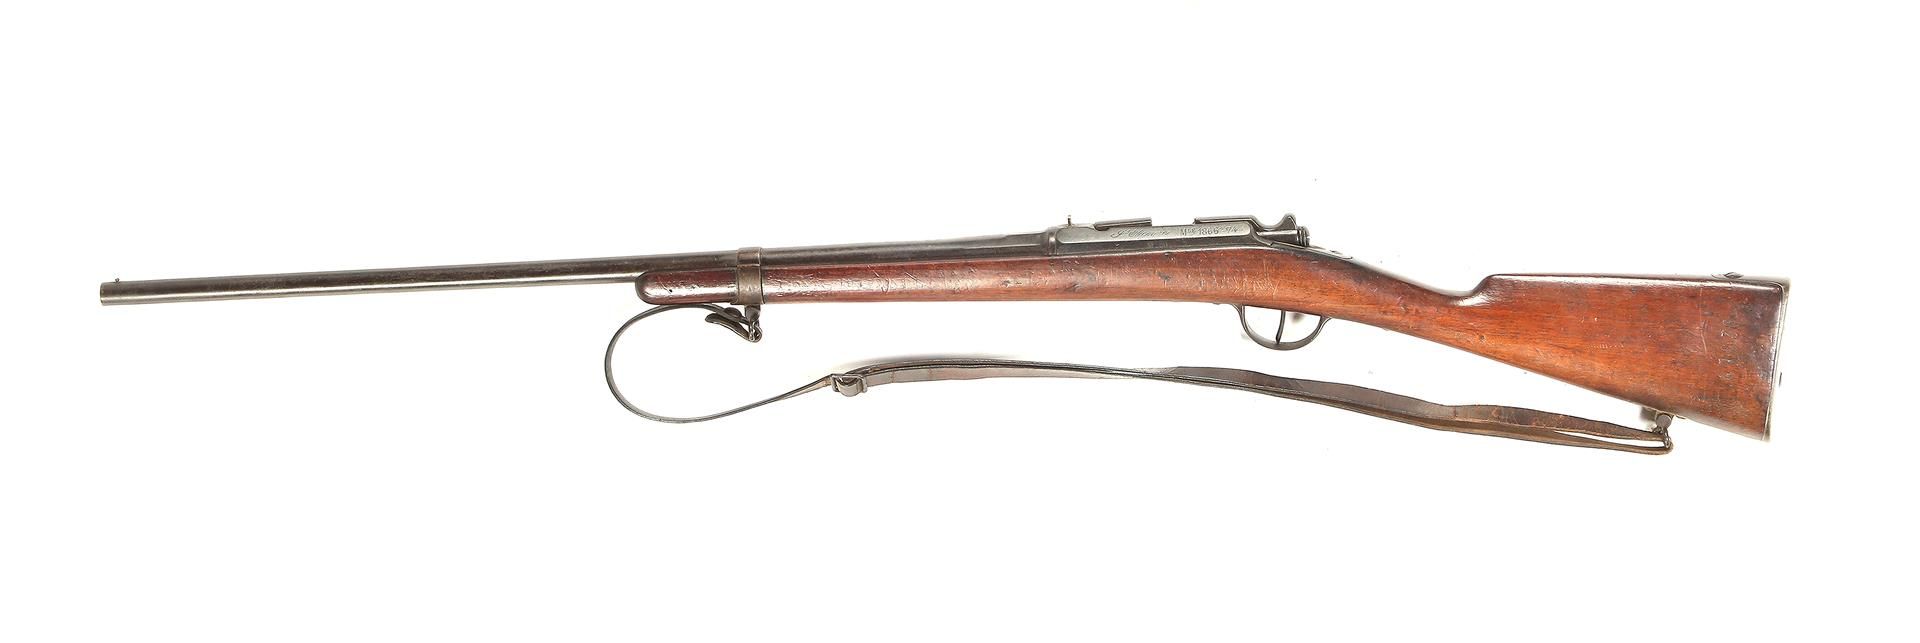 Null Carabine, marquée Saint Etienne, Mle 1866-74, M80, 120 cm de long